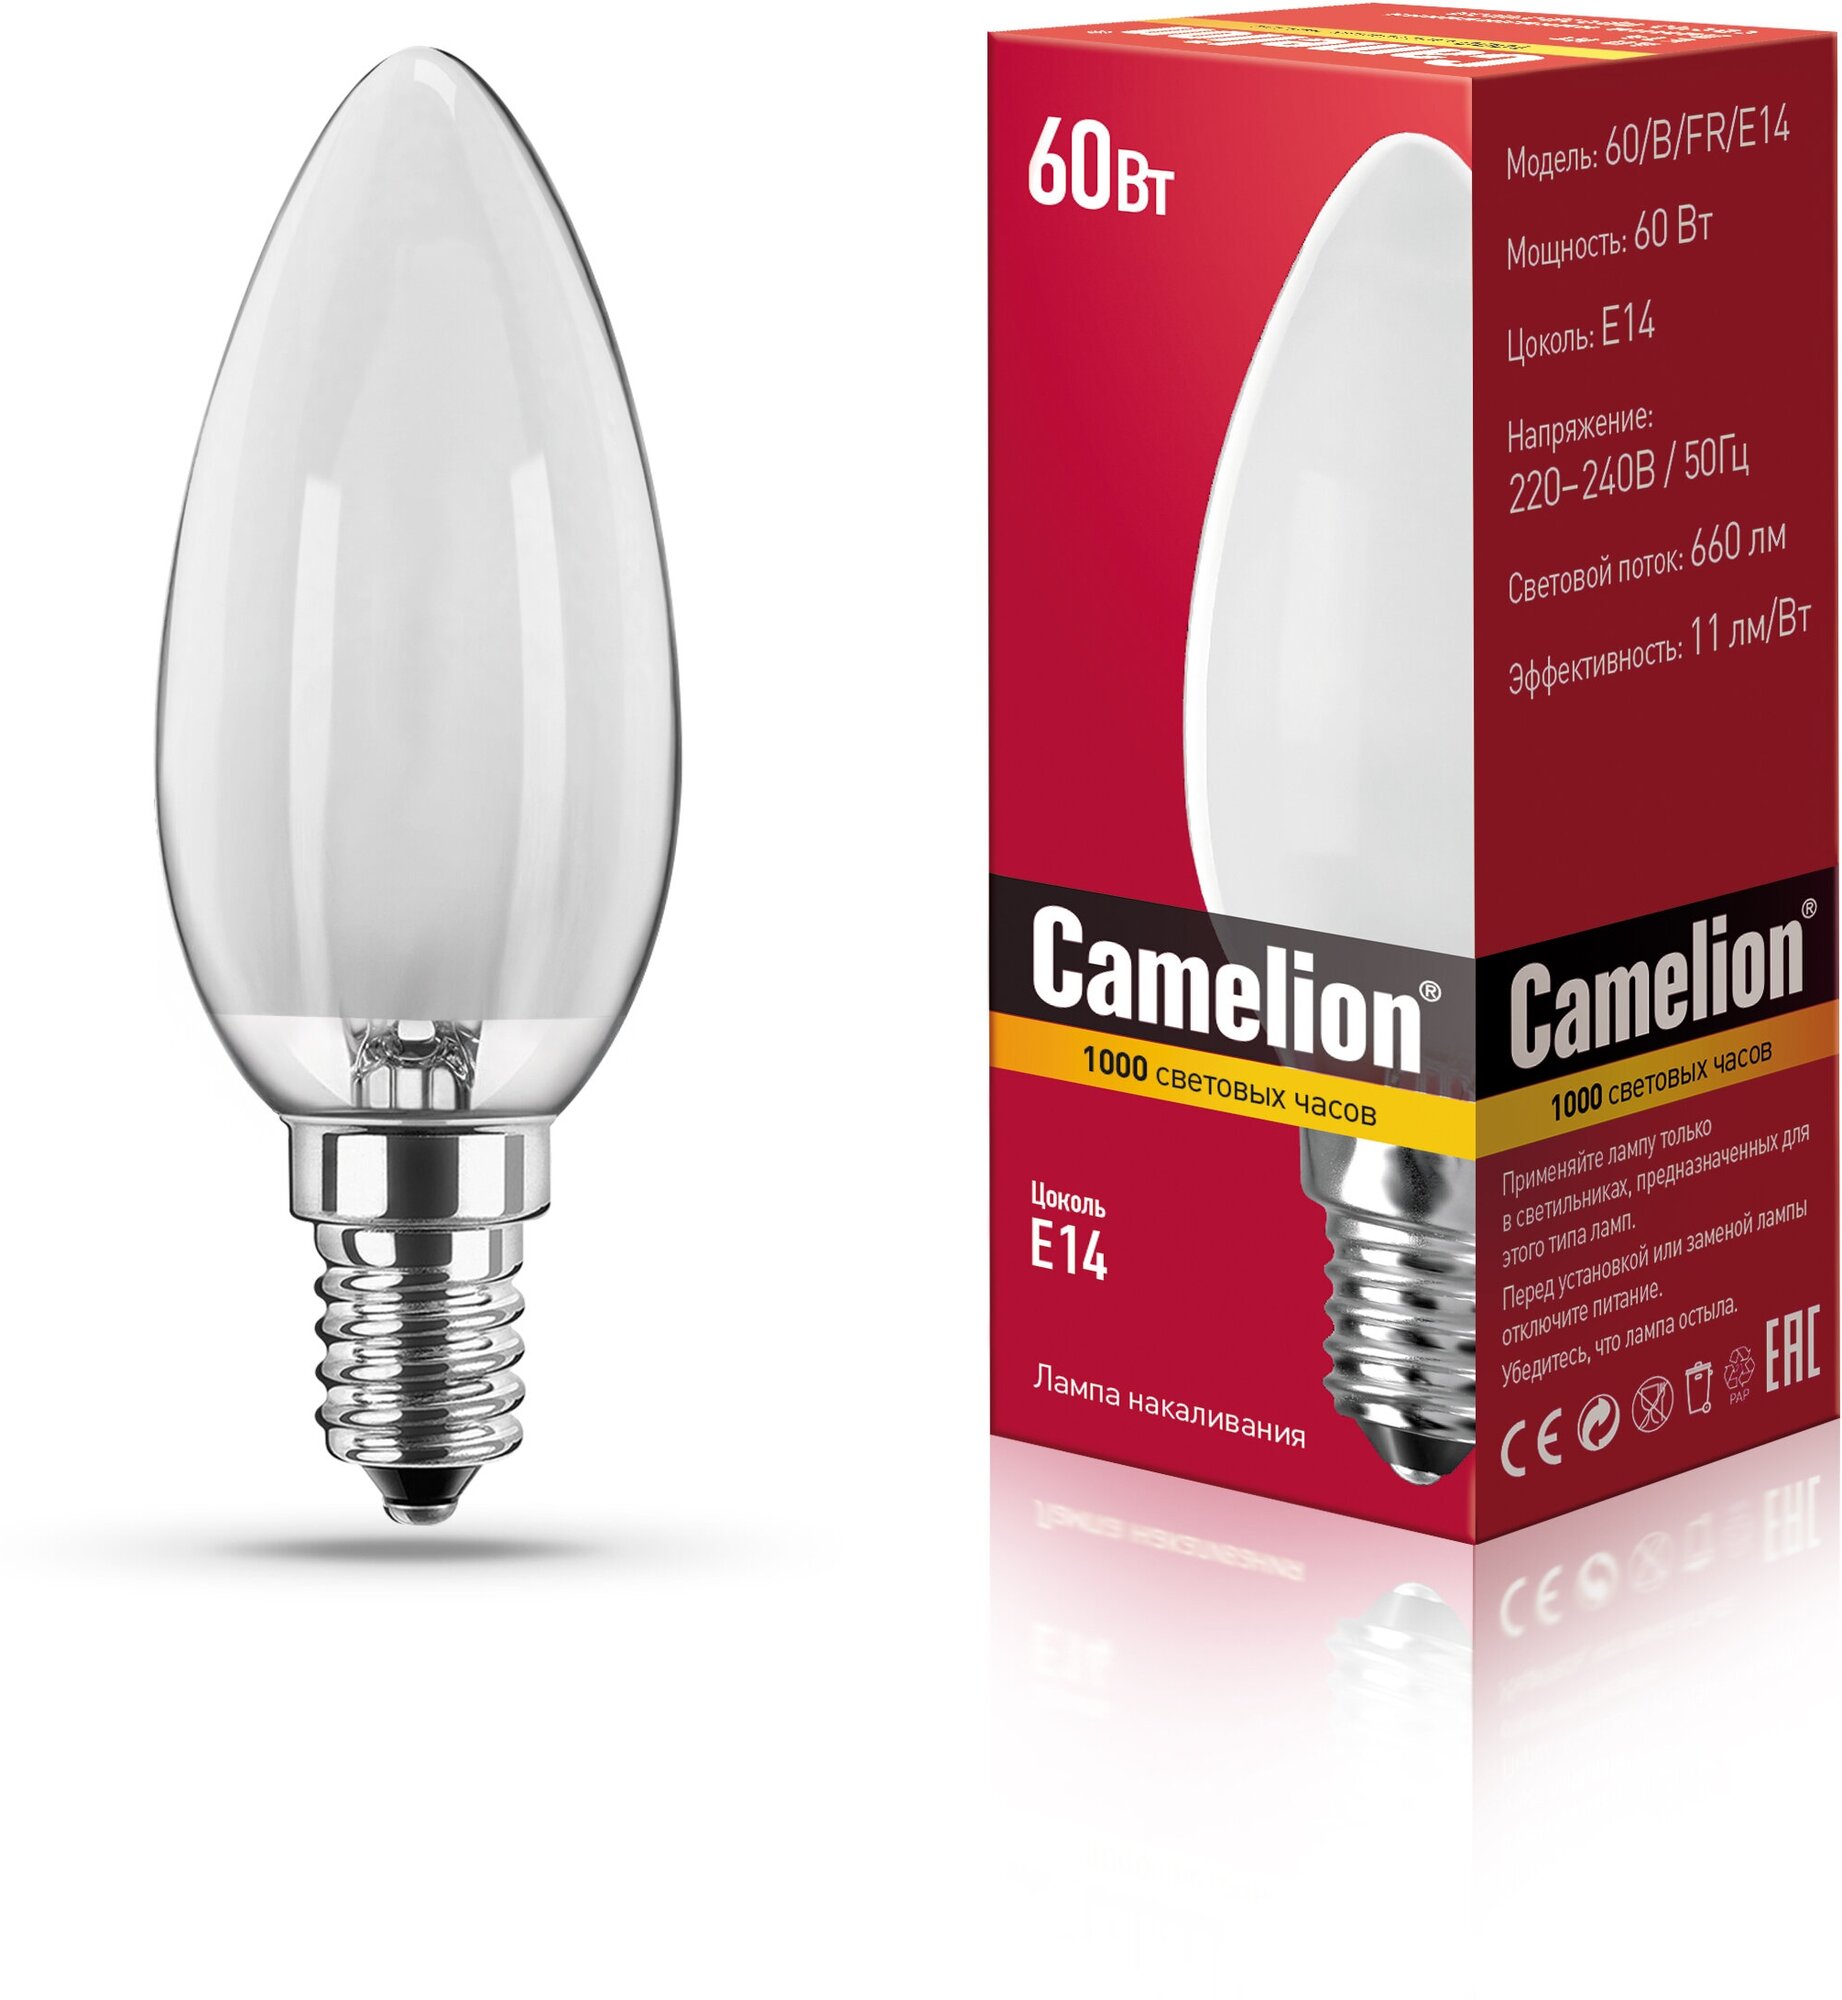 Лампа накаливания Camelion 60 B FR E14